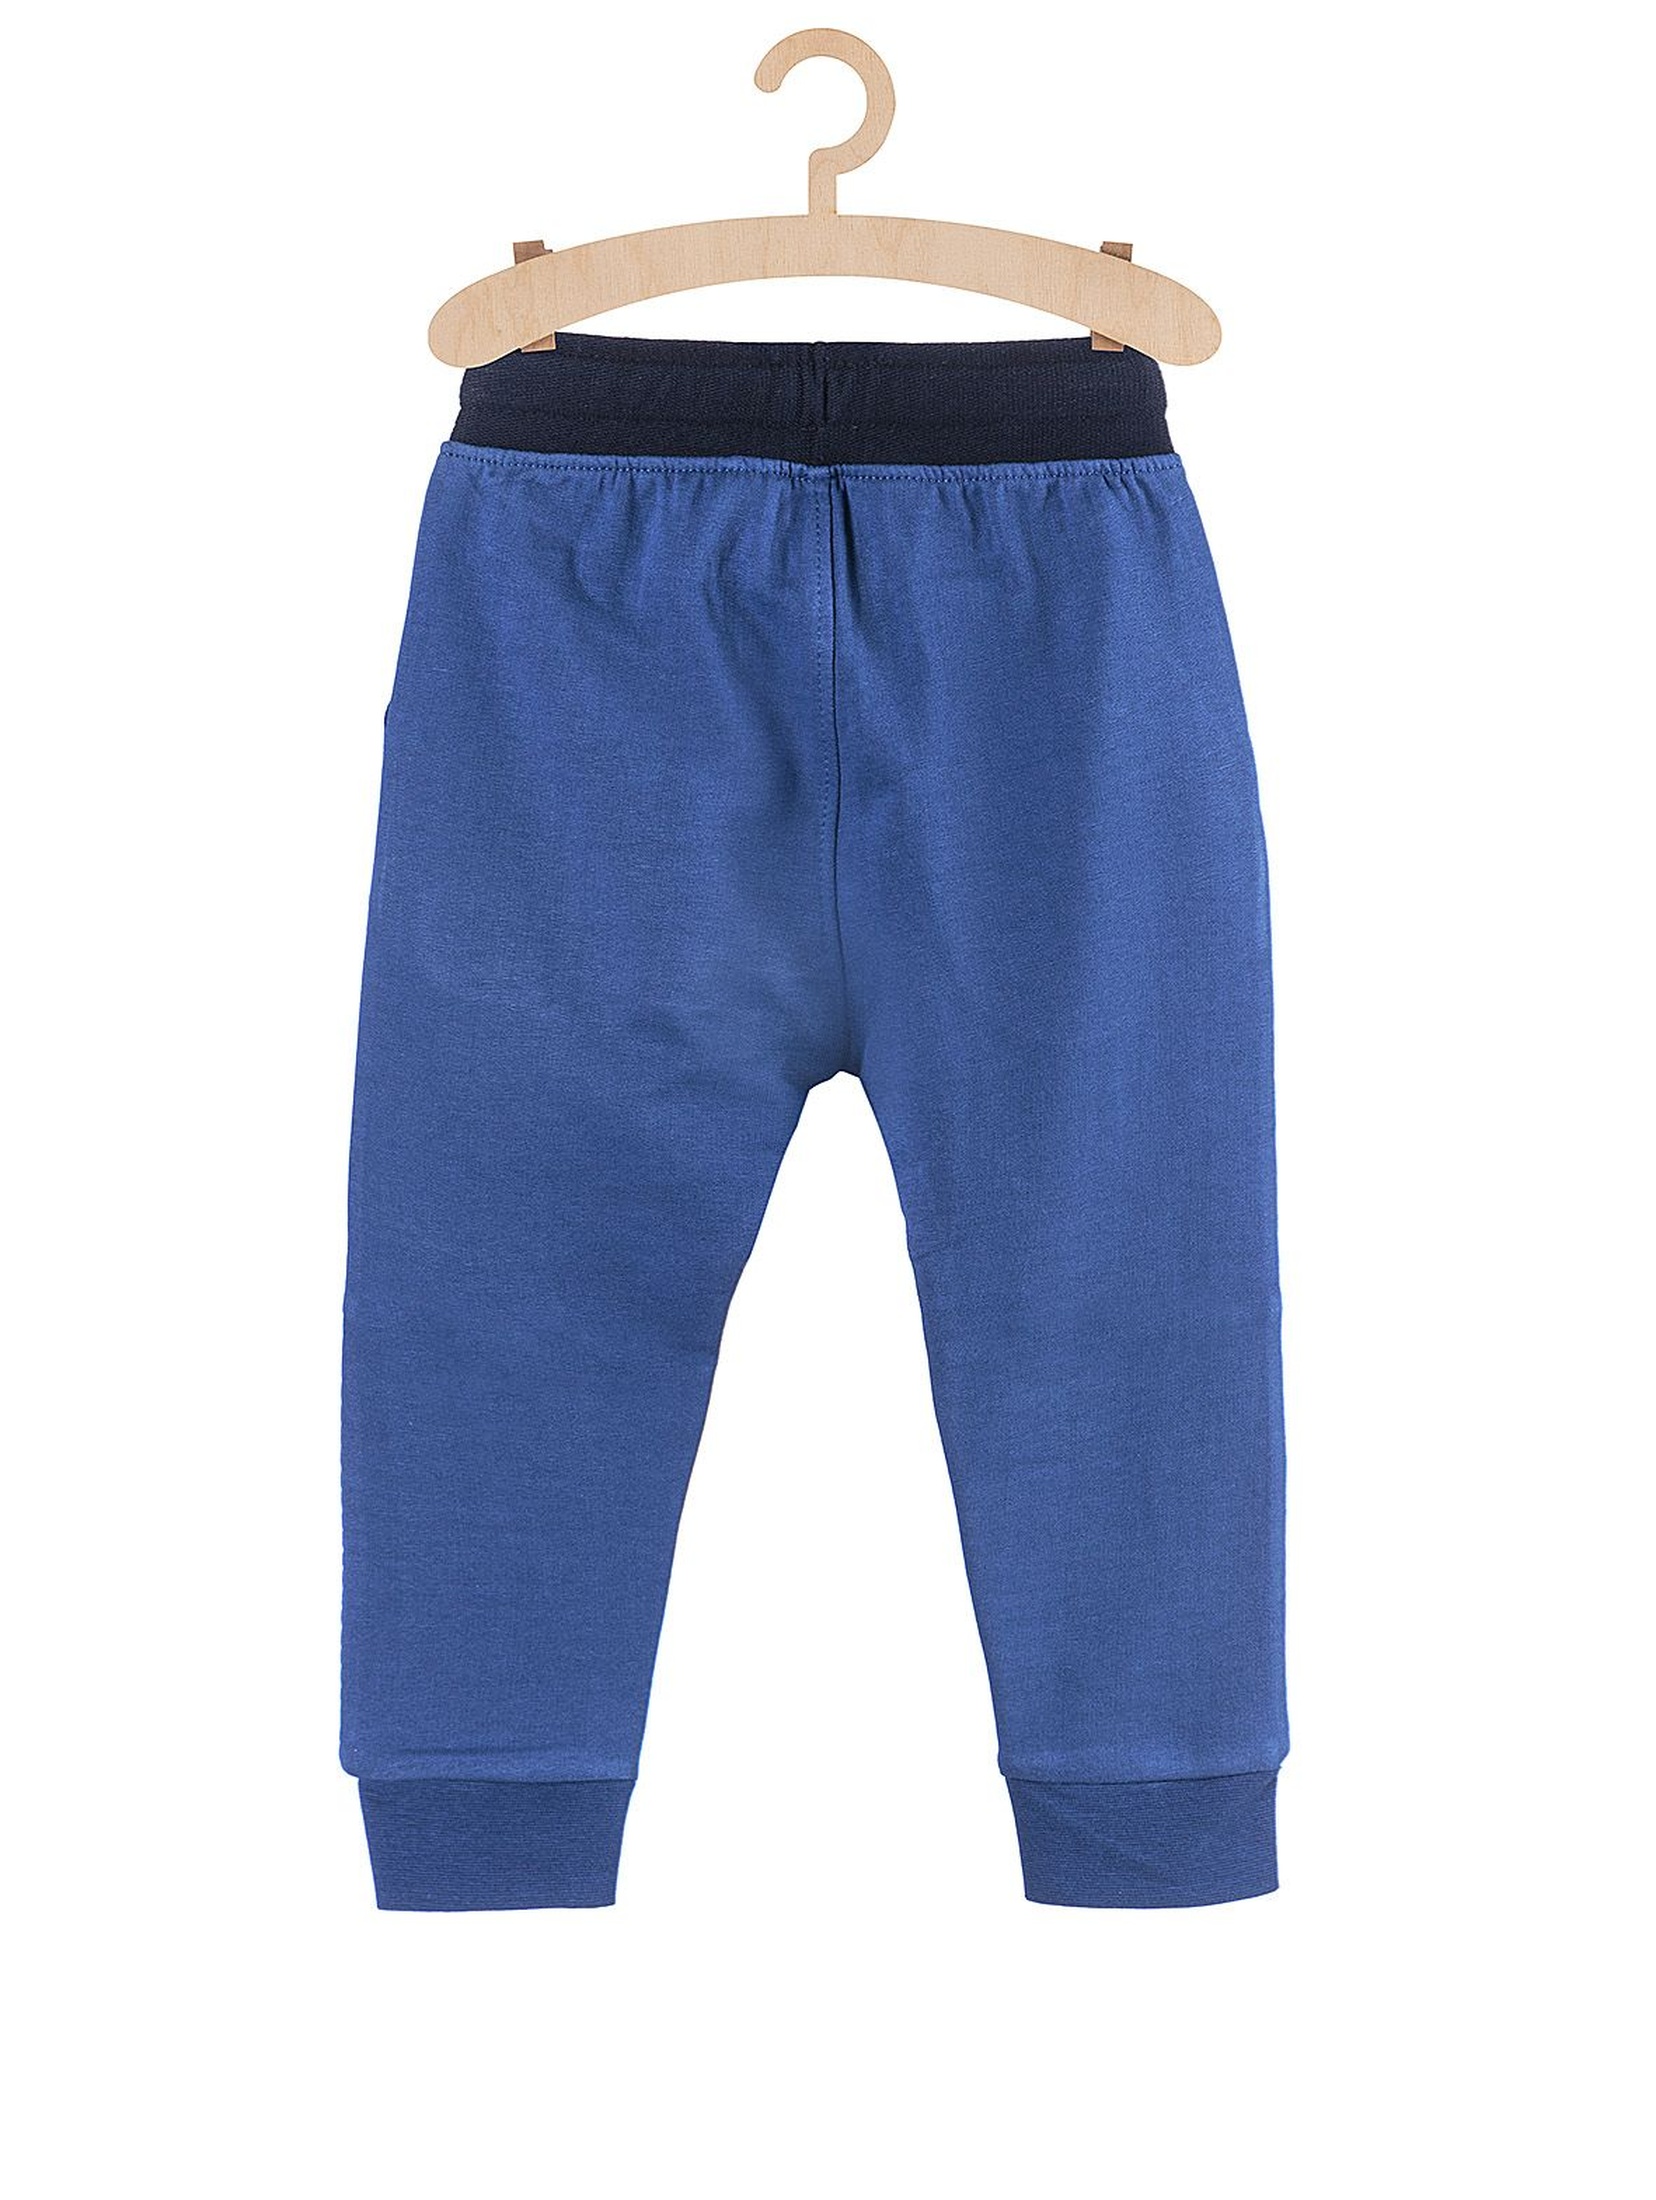 Dresowe spodnie dla chłopca- niebieskie z naszywkami